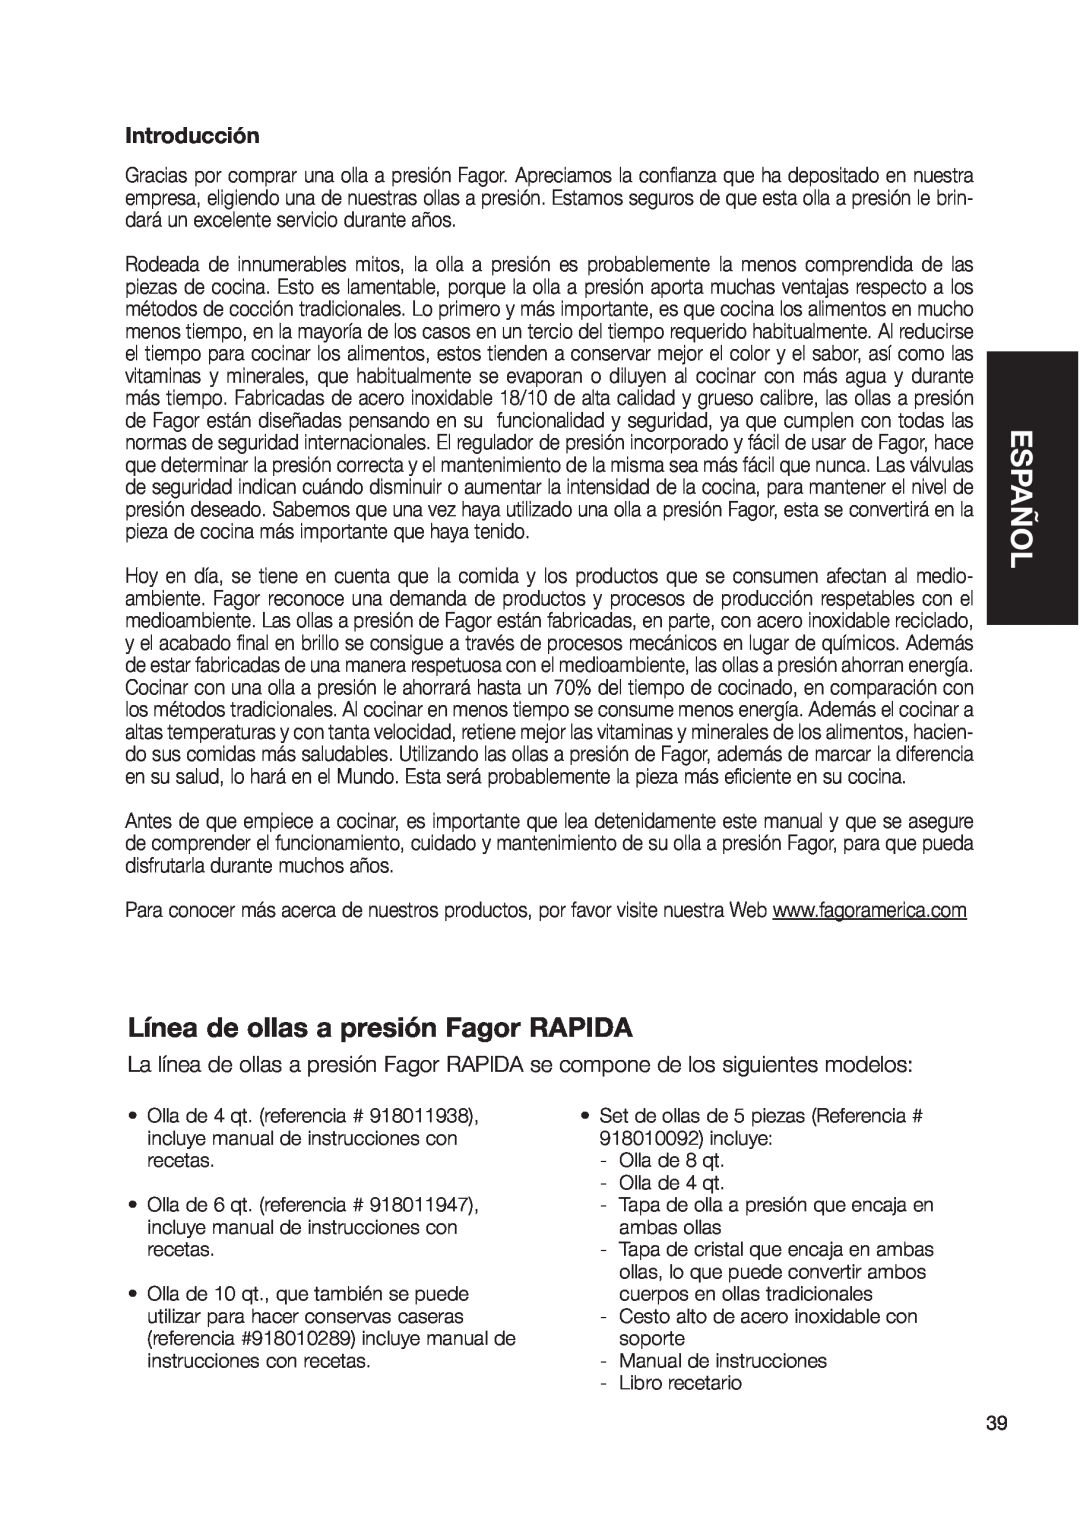 Fagor America Fagor Rapida Pressure Cooker user manual Línea de ollas a presión Fagor RAPIDA, Español, Introducción 